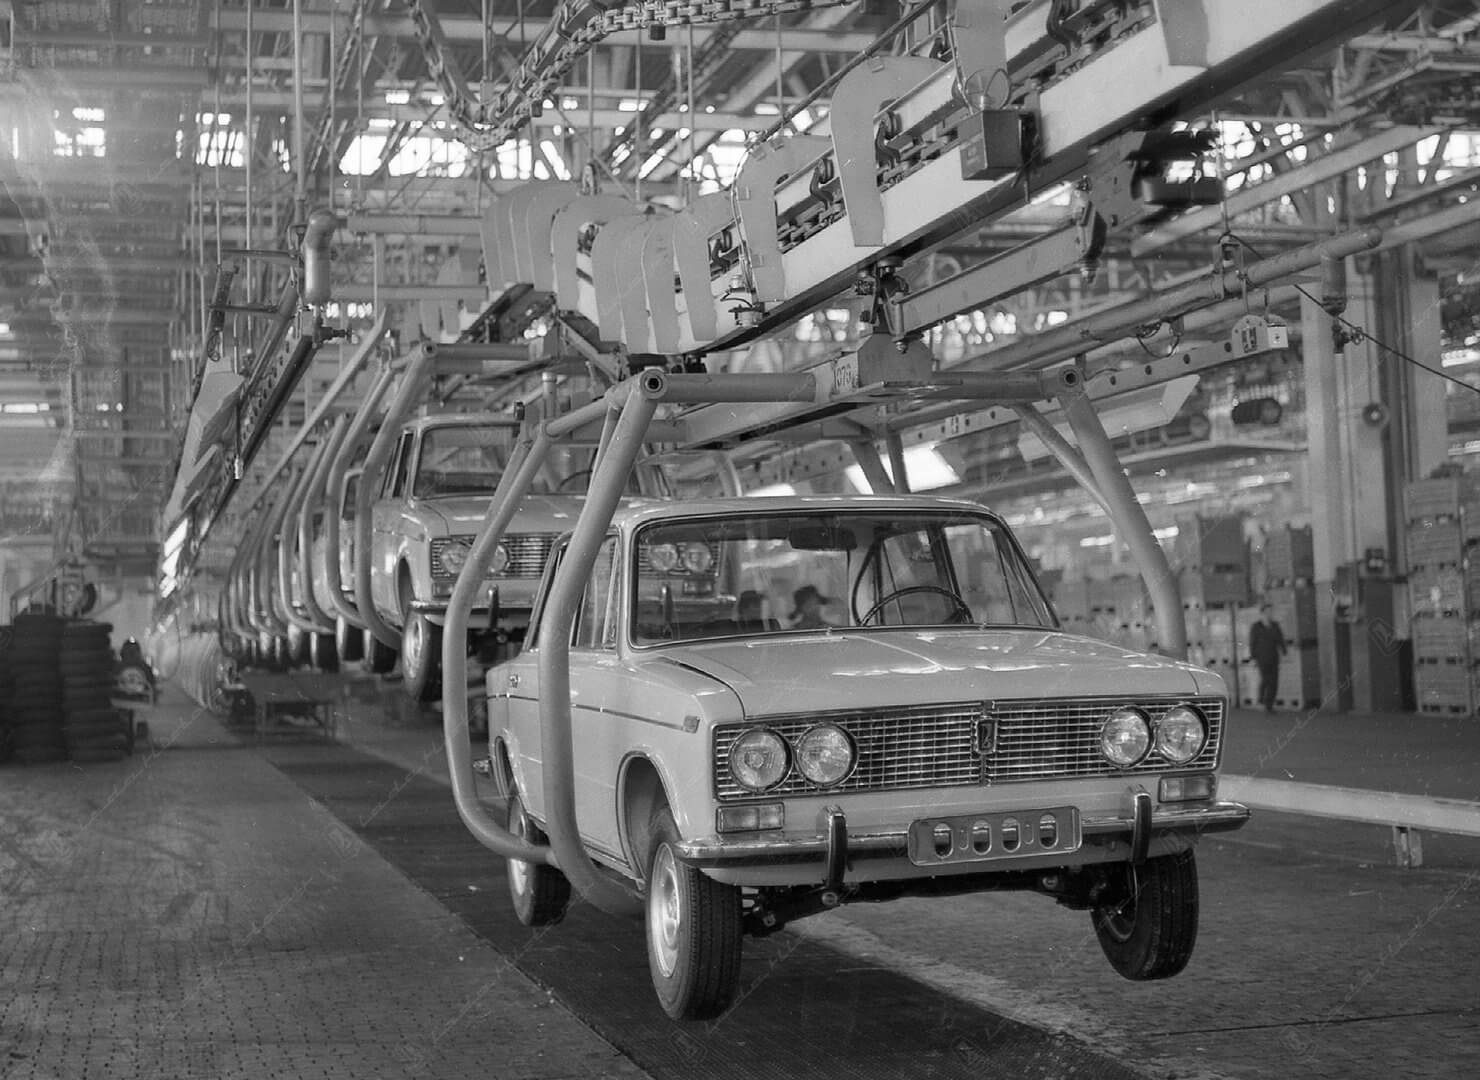 Algused: katsetused ja tehase rajamine  Mais 1966 sõlmitakse koostöölepe Nõukogude Liidu Autotööstuse Ministeeriumi ja Itaalia autofirma FIAT vahel uue automudeli väljatöötamiseks FIAT 124 baasil. Aastatel 1967-1969 läbib Fiat 124 katsetused Venemaa karmides oludes – nii suvel kui talvel, kruusateel, asfaldil ja munakivisillutisel. Katsetuste tulemusel viiakse esmamudelil VAZ 2101 konstruktsiooni sisse ligi 800 muudatust võrreldes Itaalia eeskujuga.  Tööd 550 hektari suurusele alale planeeritud uue Volga Au